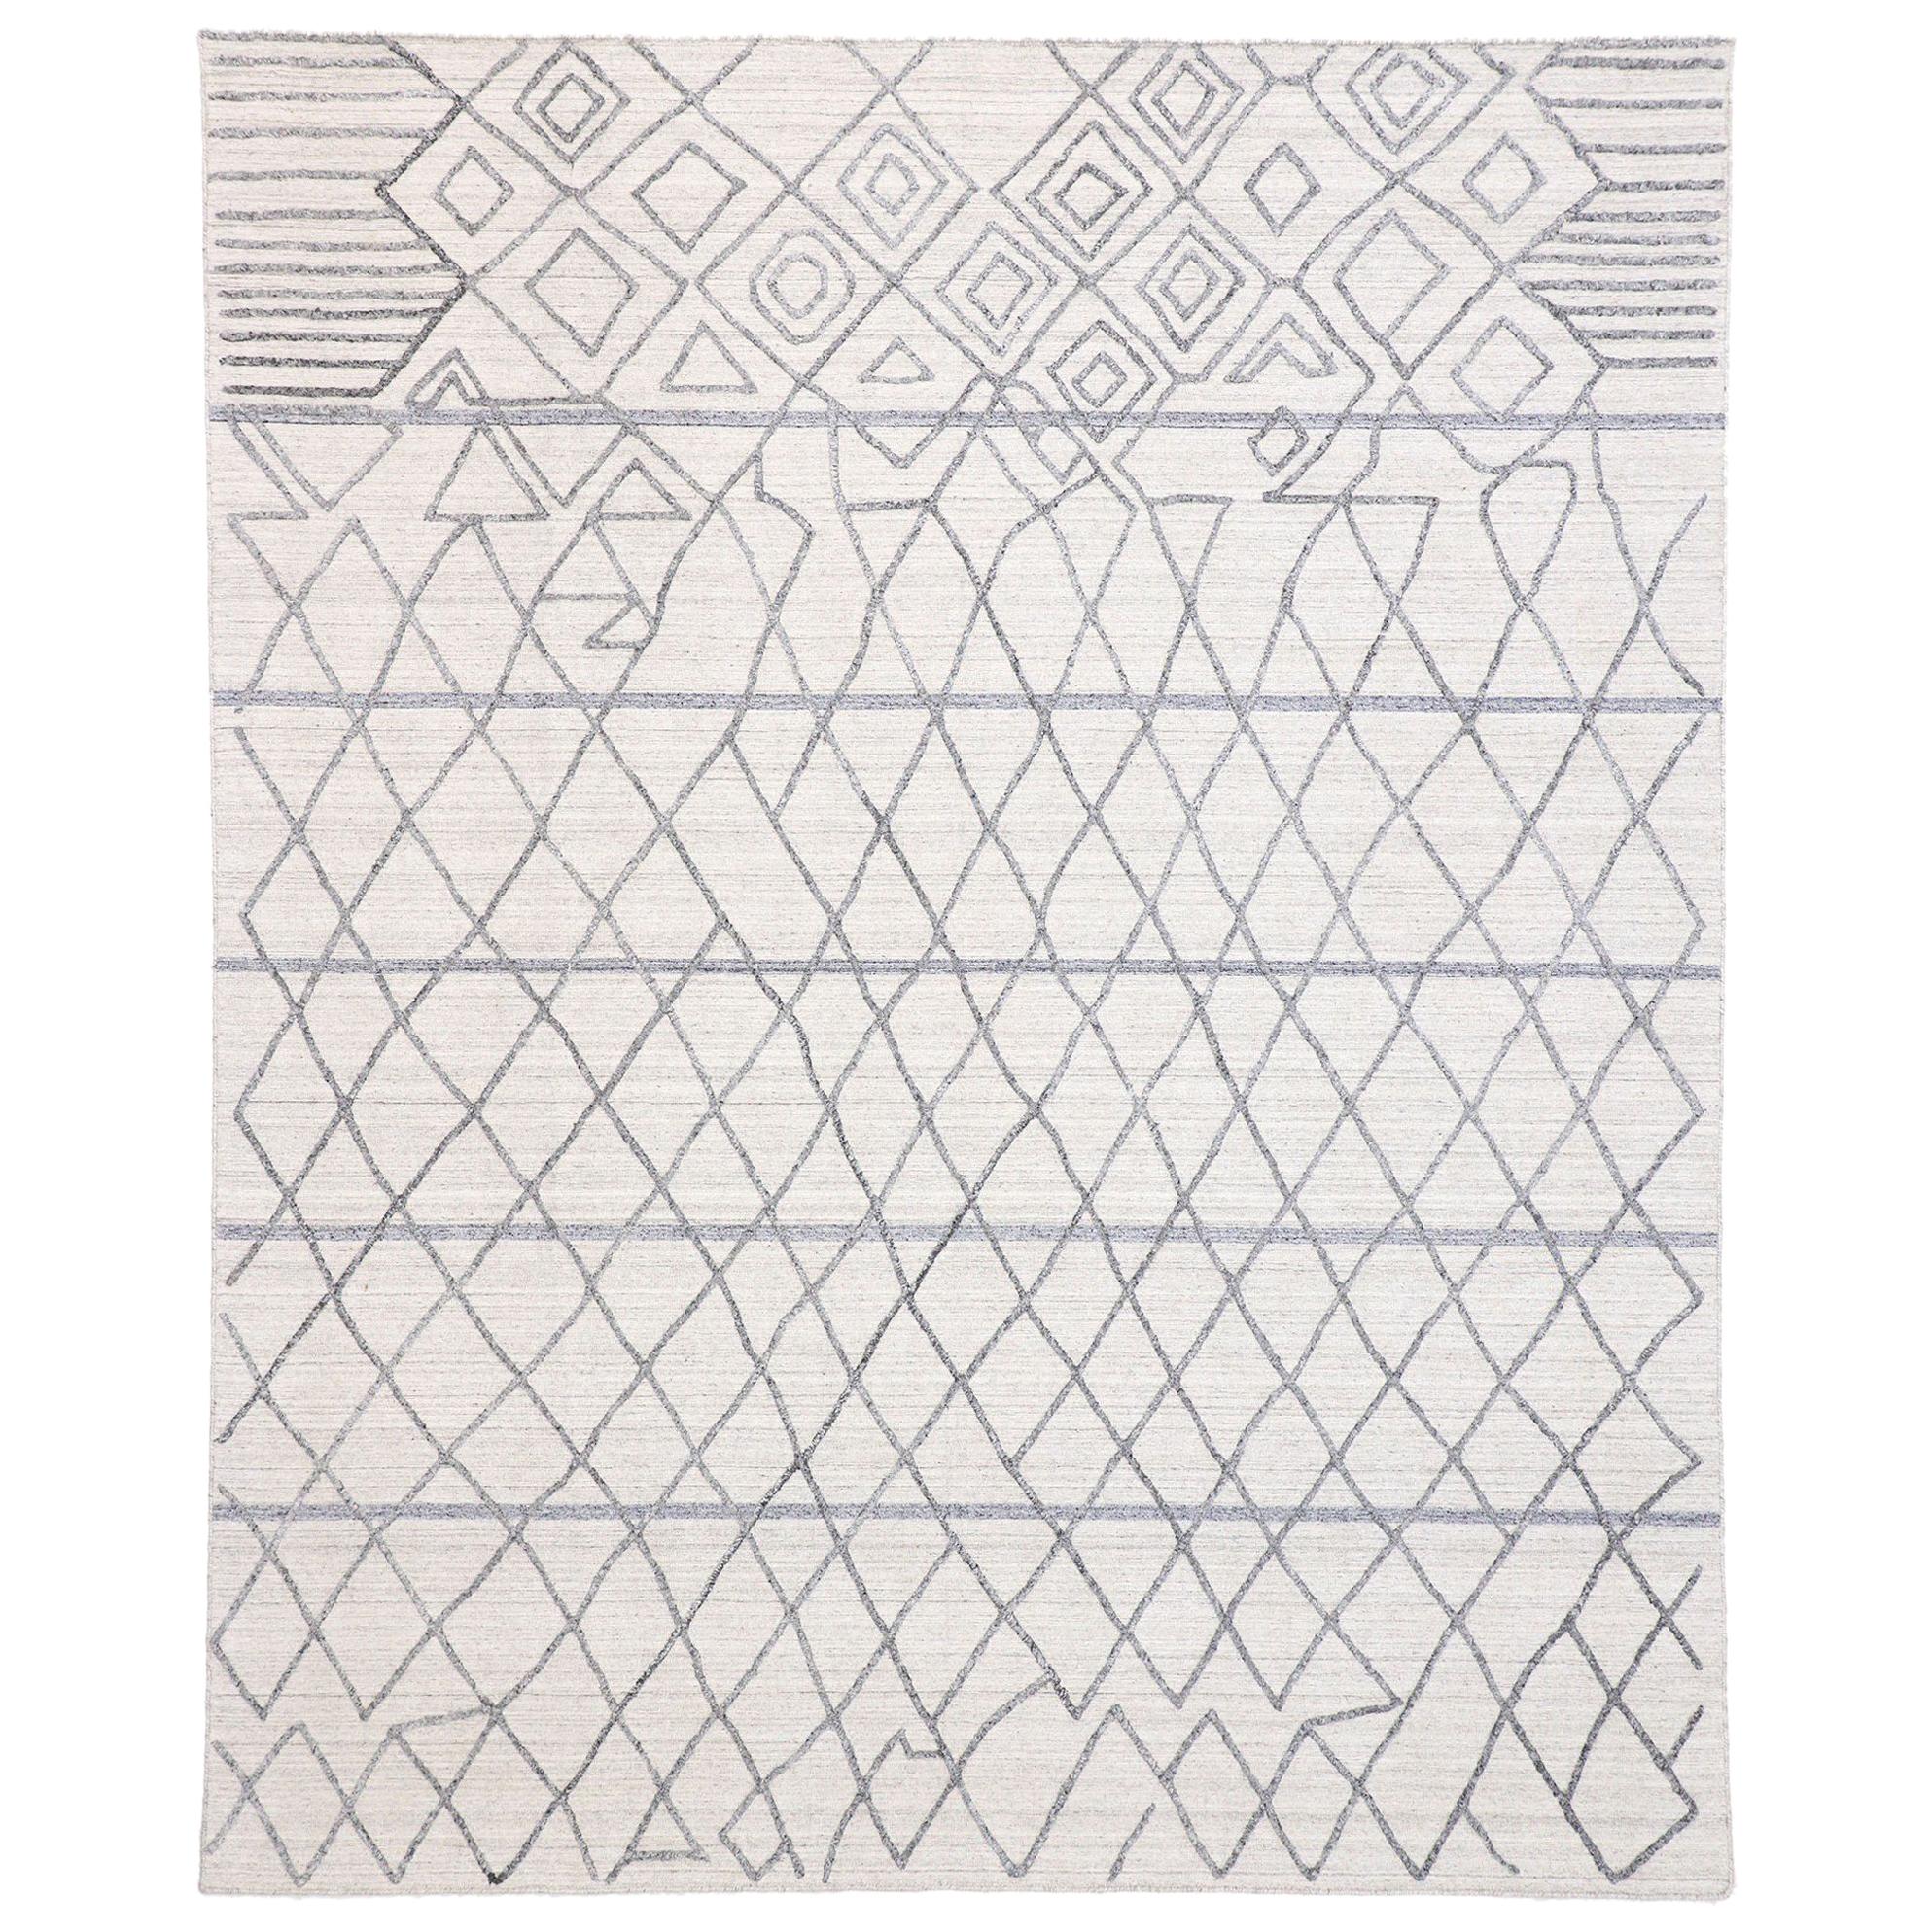 Moderner strukturierter grauer Teppich mit marokkanischem, erhabenem Spalier-Design in Grau